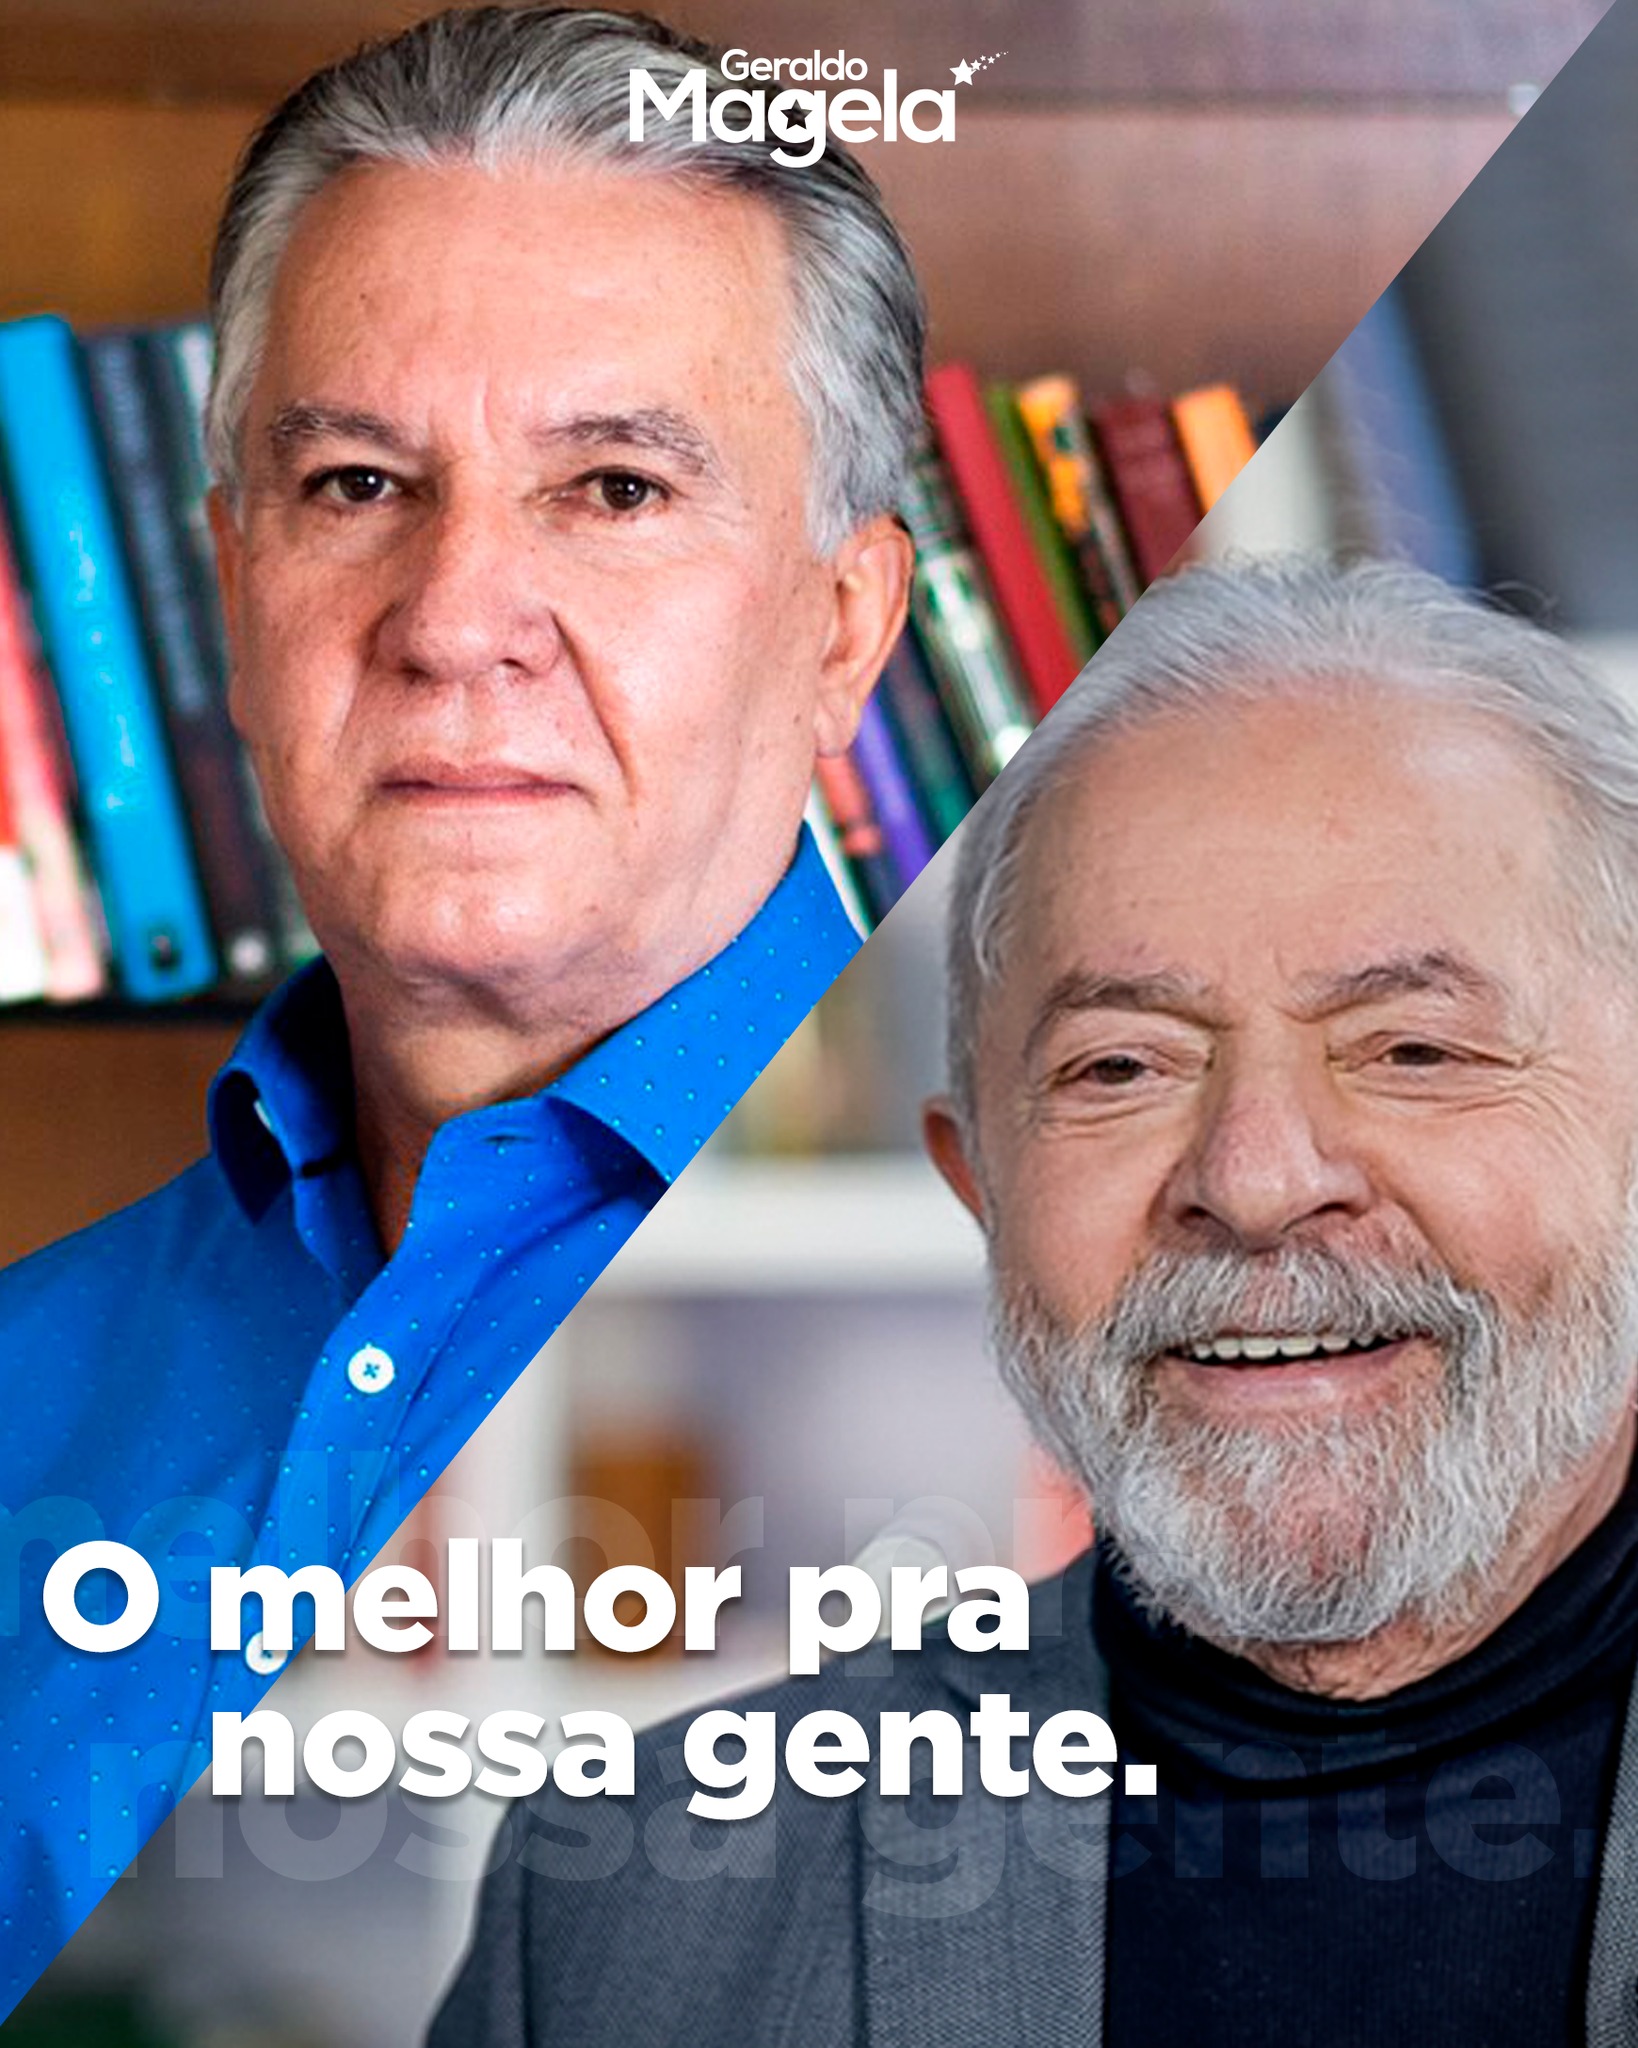 Apesar de todas as dificuldades dos últimos anos, o povo brasileiro não desiste nunca. E nós vamos nos unir a #Lula para trazer de volta a esperança ao paí­s e ao DF.  Juntos, podemos ir em busca do crescimento, da igualdade e da justiça para todos. 